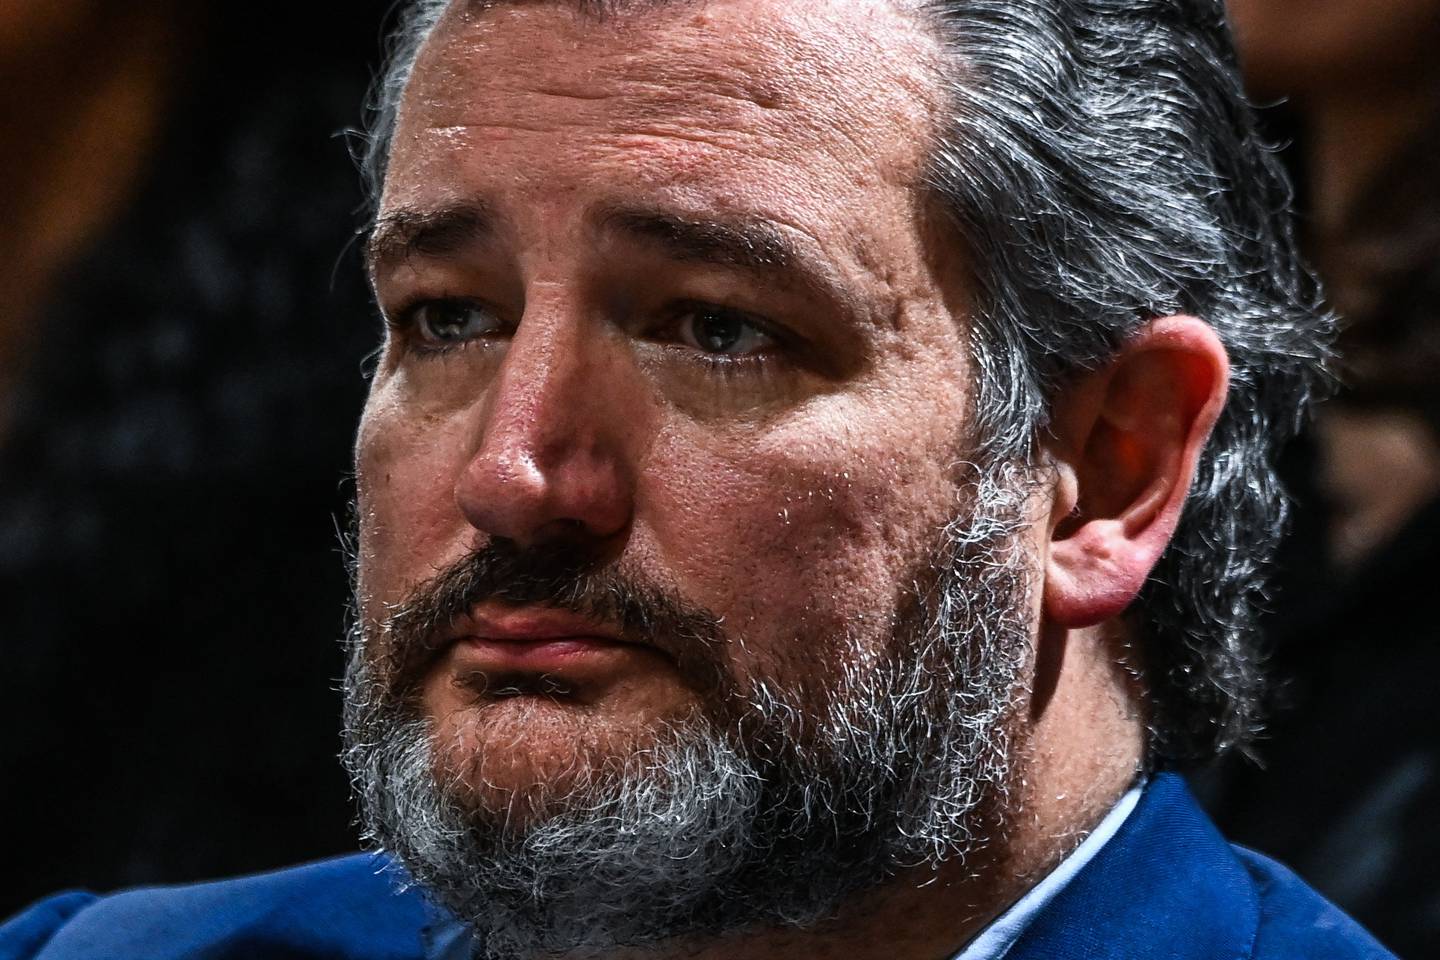 Senator Ted Cruz er en av våpenlobbyens mest profilerte støttespillere. Her fra onsdag, under en minnemarkering for ofrene etter skytingen i Uvalde, Texas.